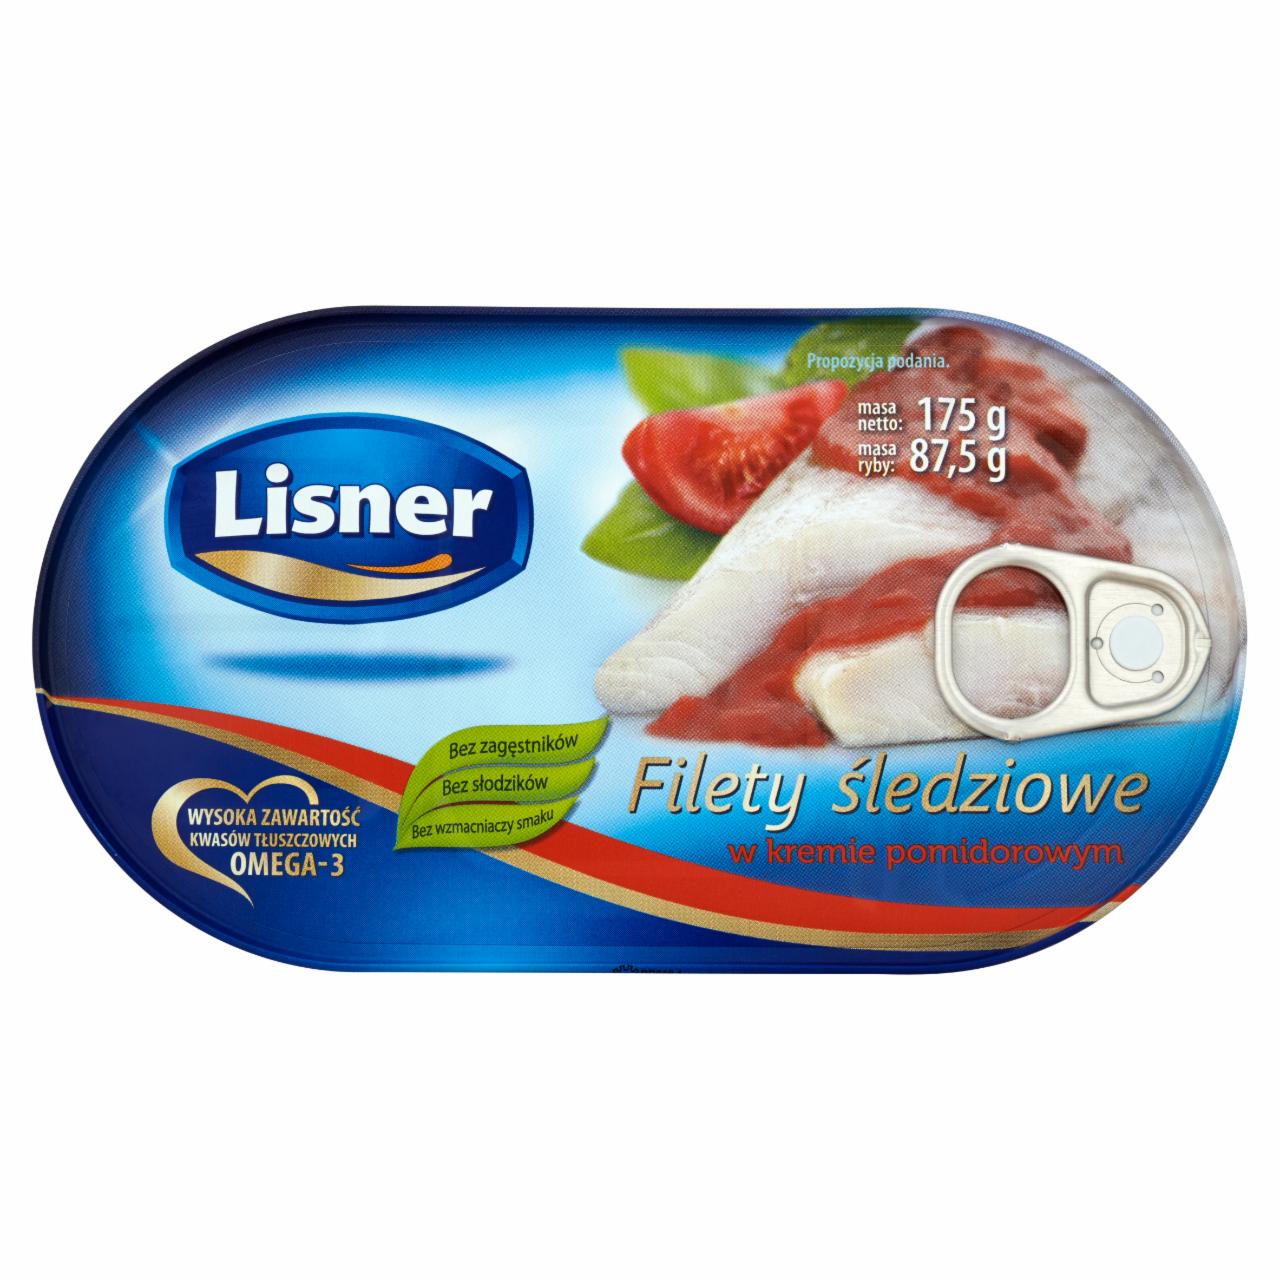 Zdjęcia - Lisner Filety śledziowe w kremie pomidorowym 175 g